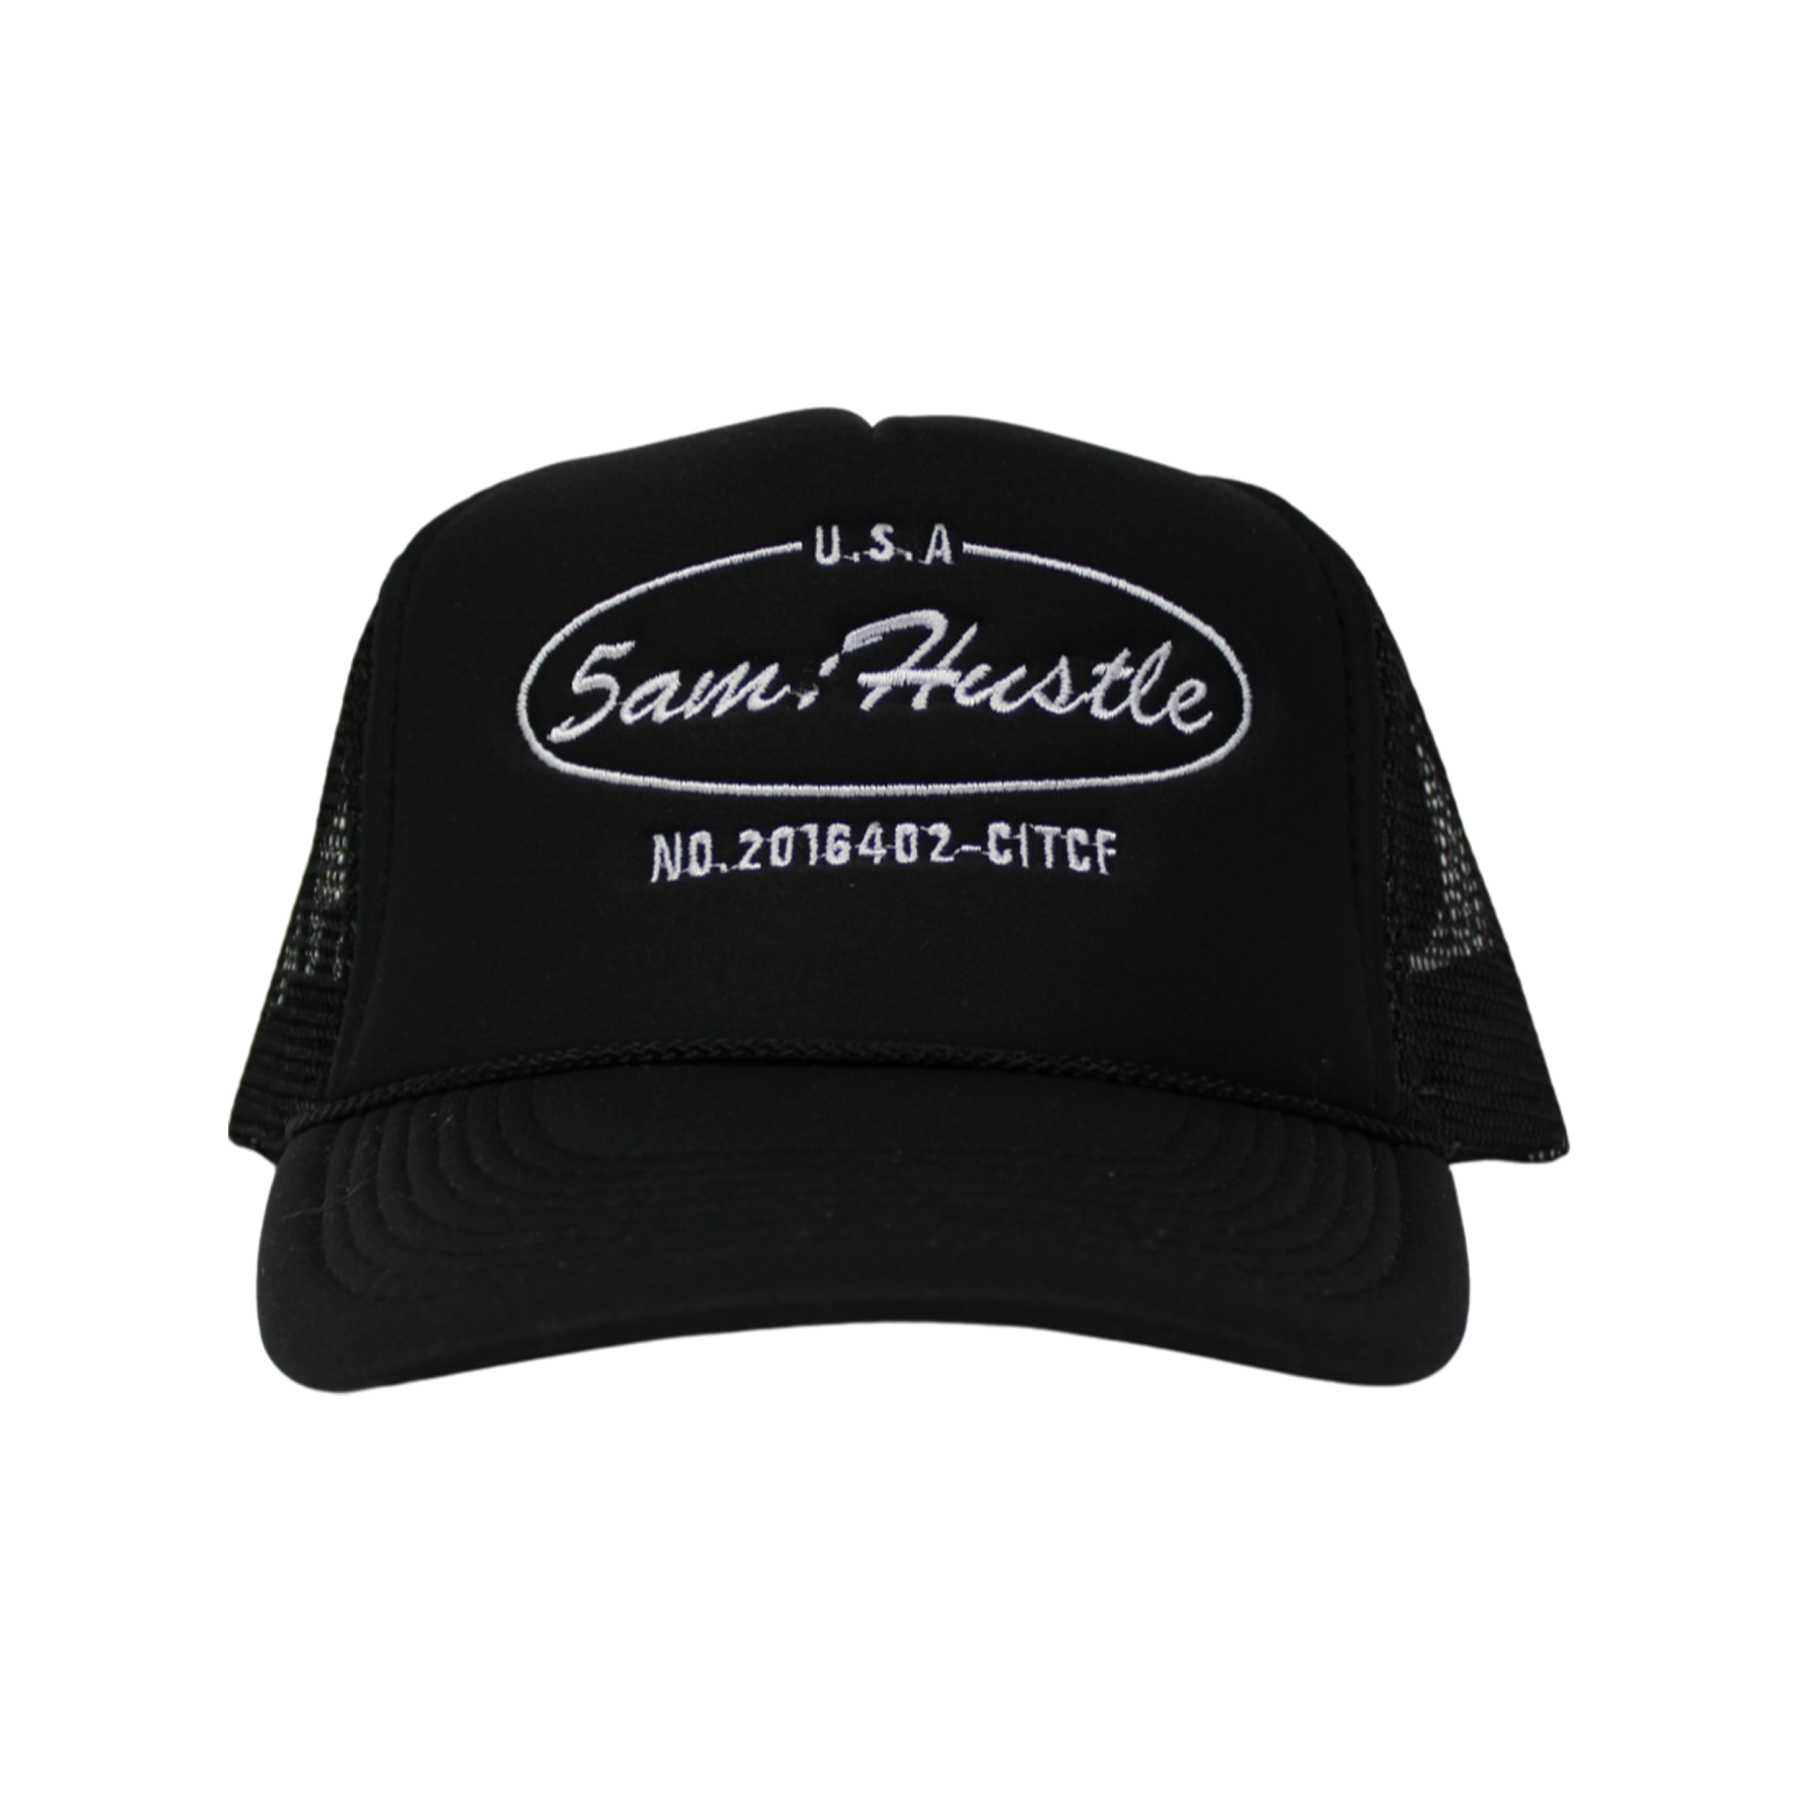 5am:Hustle Trucker Hat